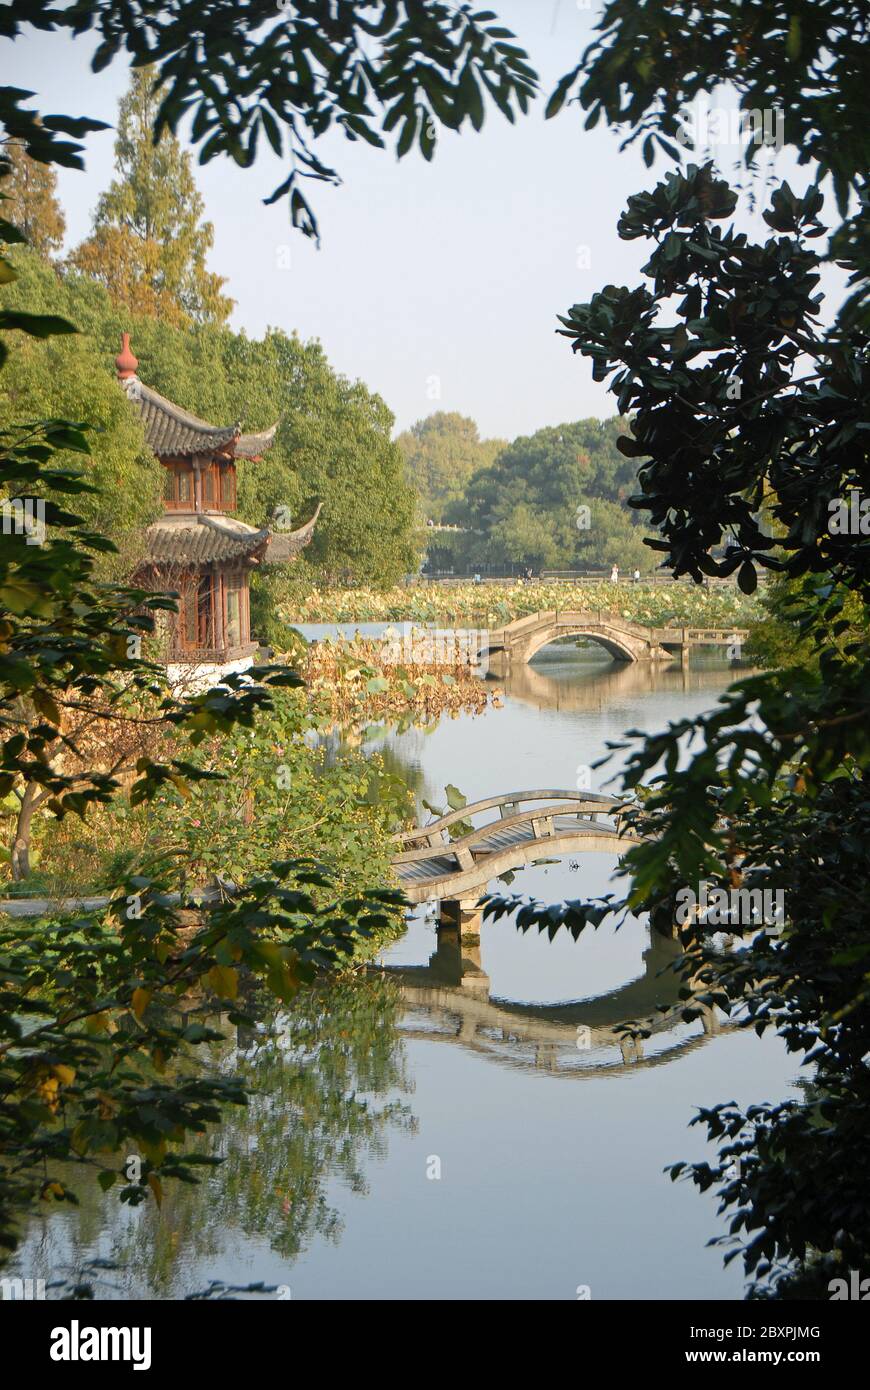 West Lake (Xi Hu) in Hangzhou, Zhejiang Province, China. View of Quyuan Garden, a scenic spot in Hangzhou on the edge of West Lake Stock Photo